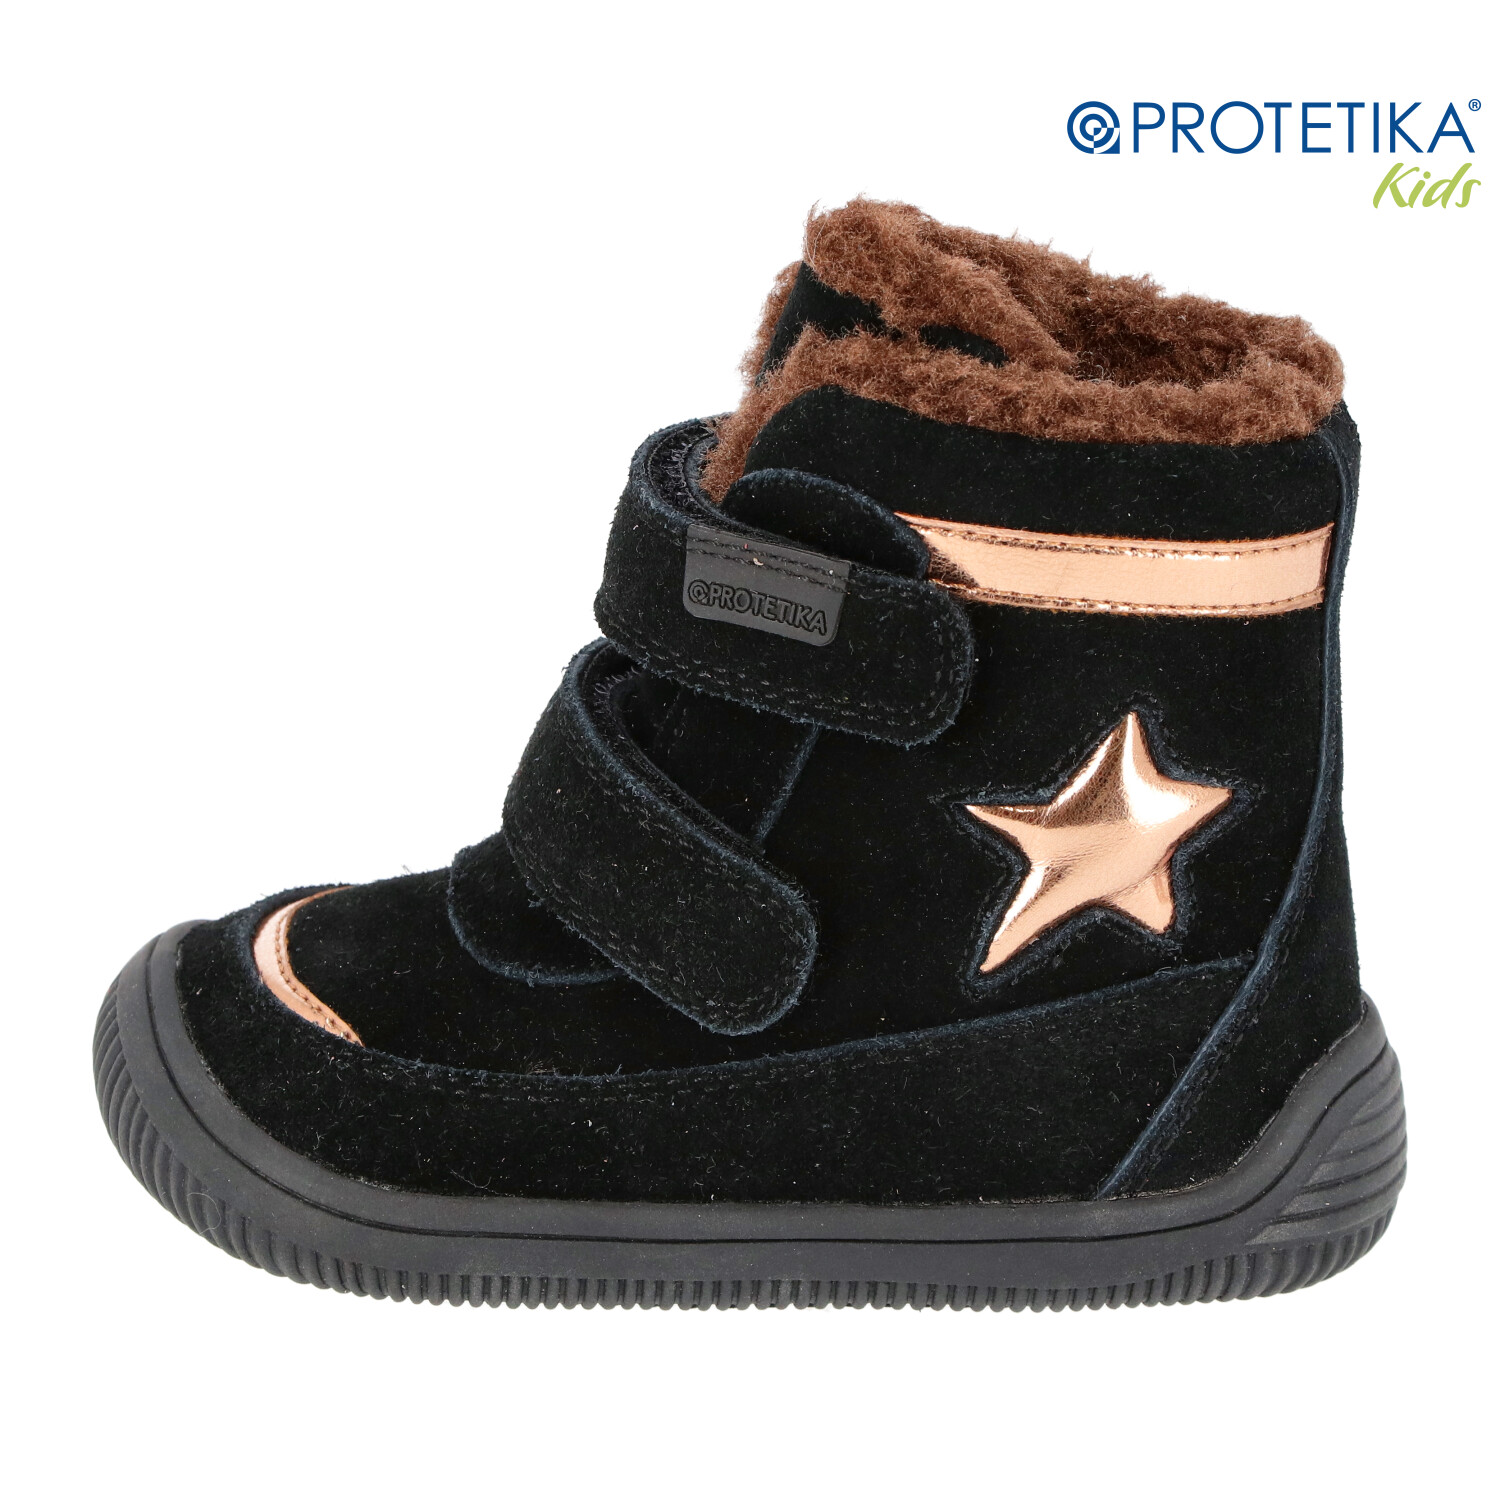 Protetika - zimné barefootové topánky LINET black - zateplené kožušinkou